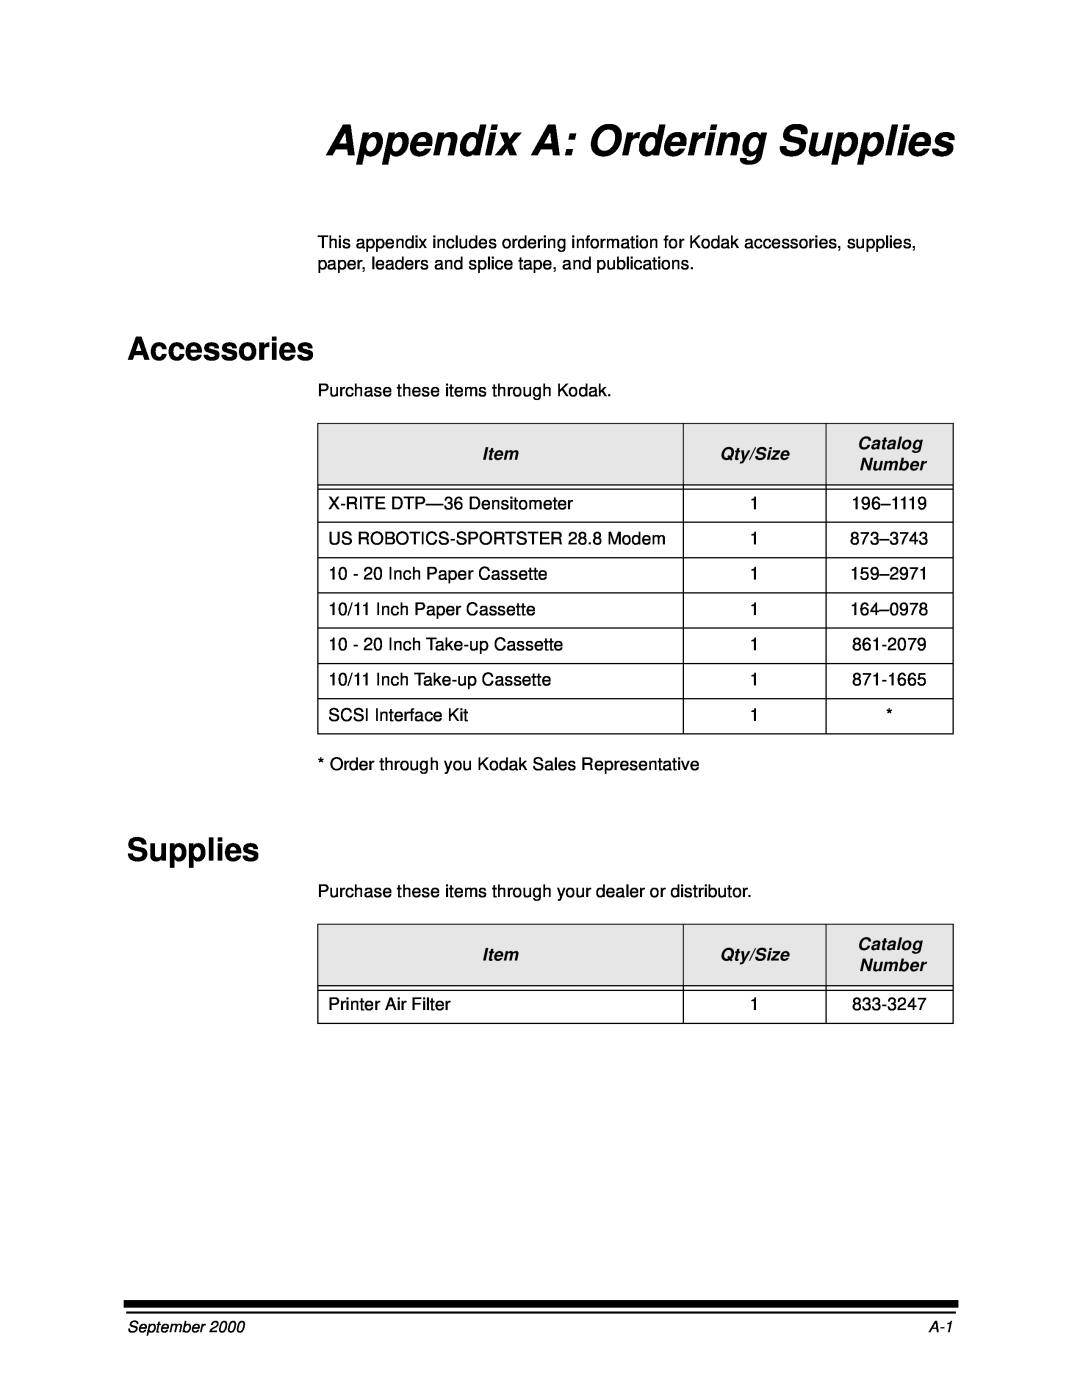 Kodak 20R manual Appendix A: Ordering Supplies, Accessories 